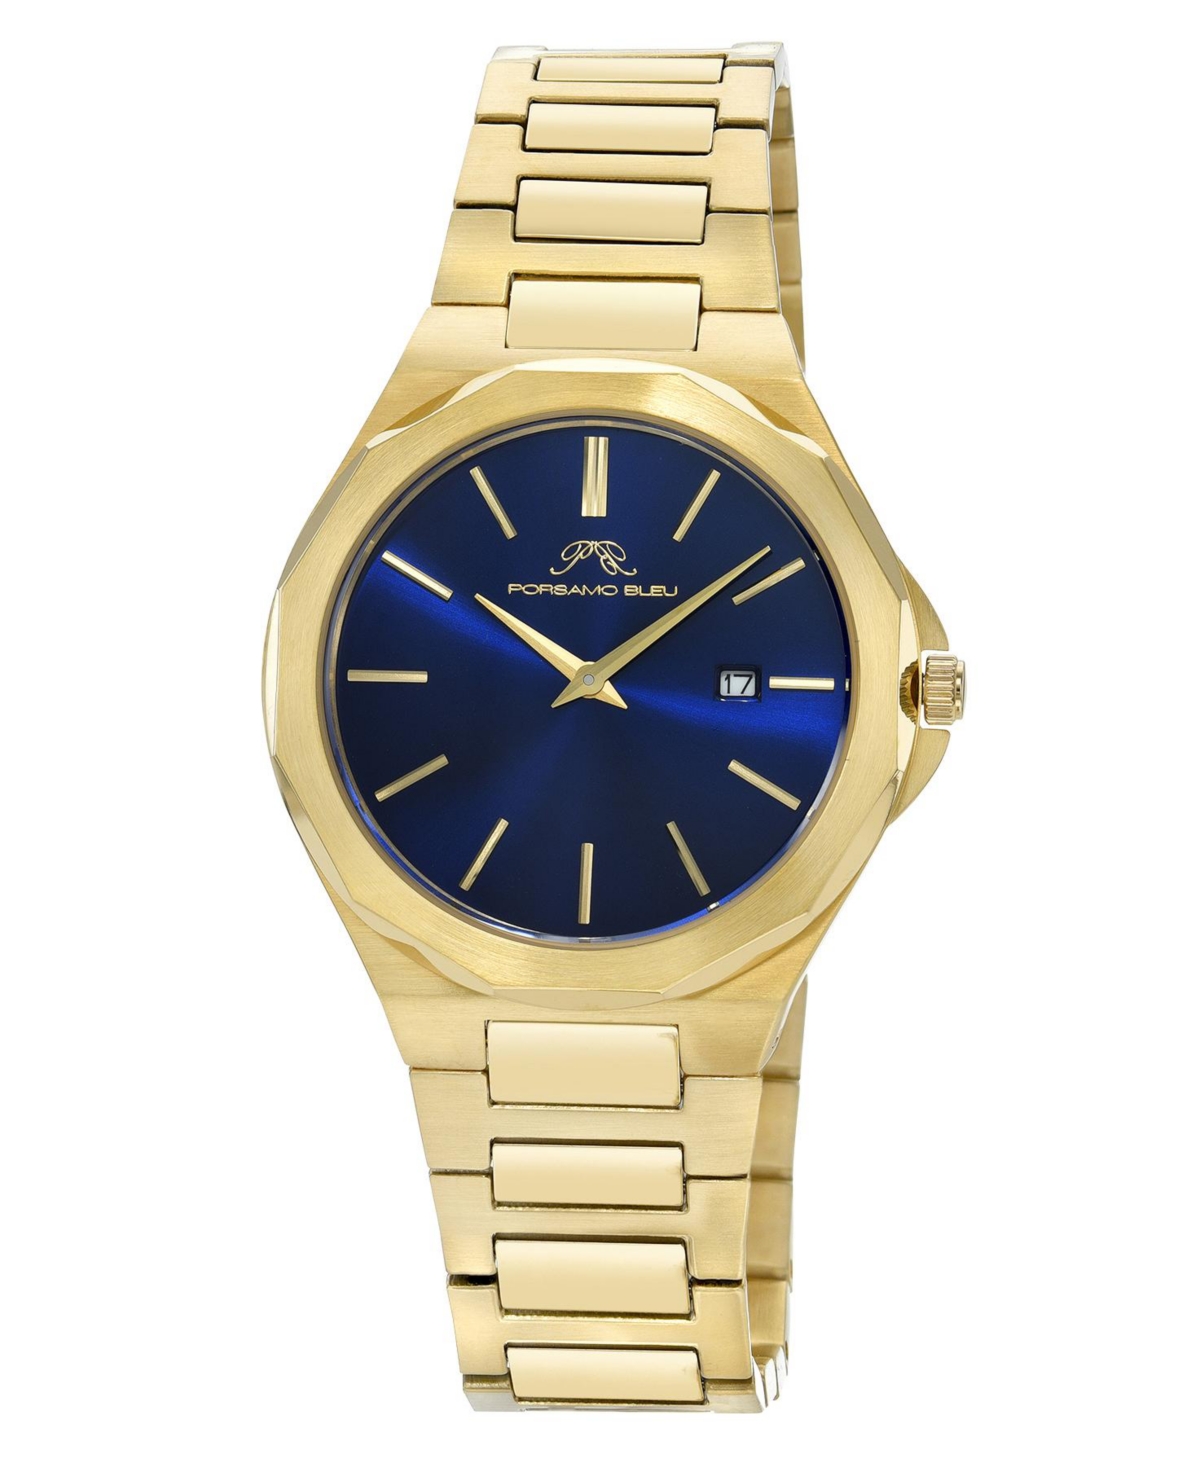 Alexander Stainless Steel Gold Tone & Bleu Mens Watch 1232BALS - Gold